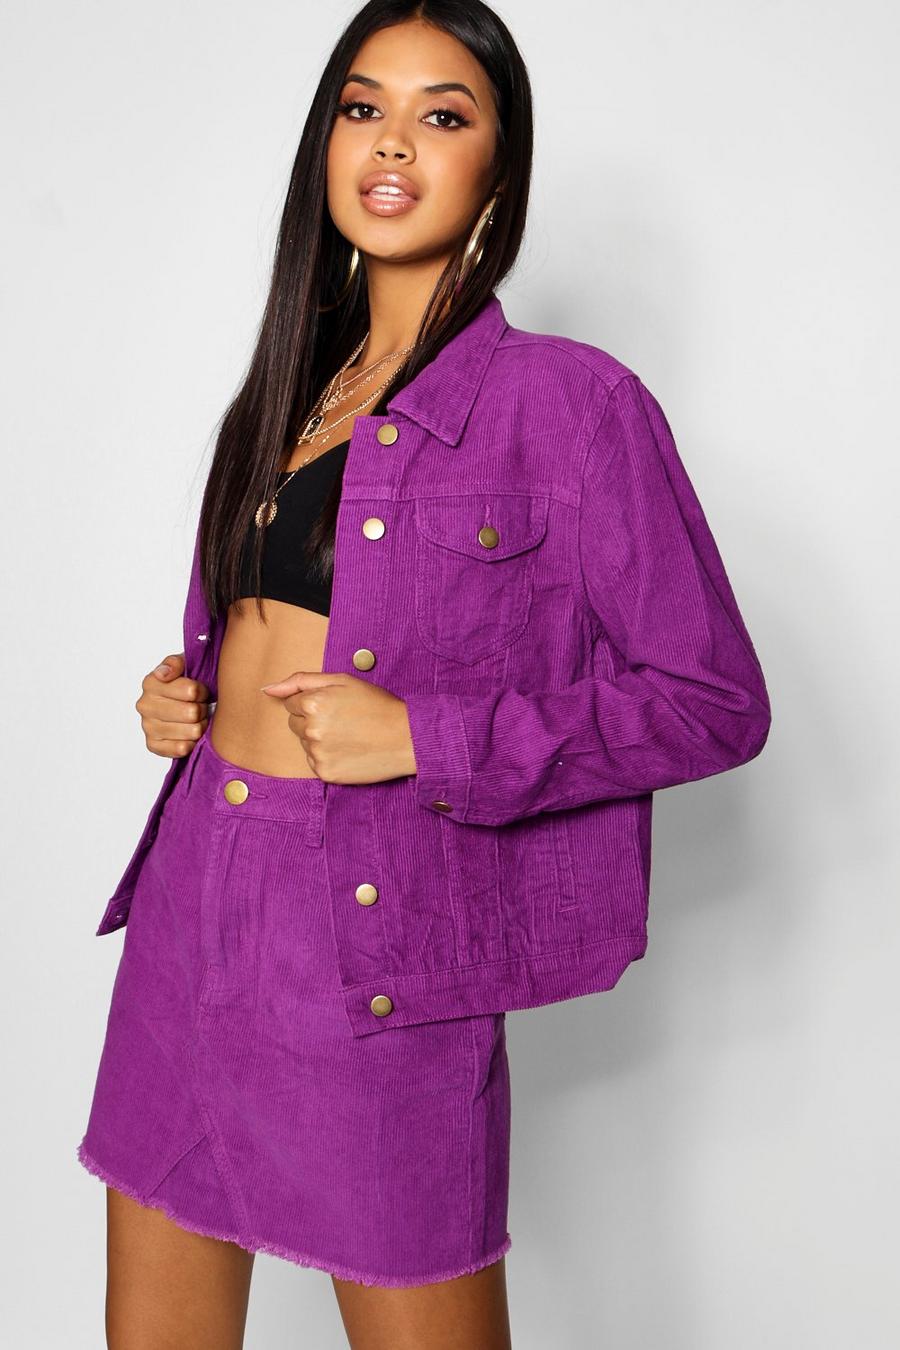 Purple Jean Jackets